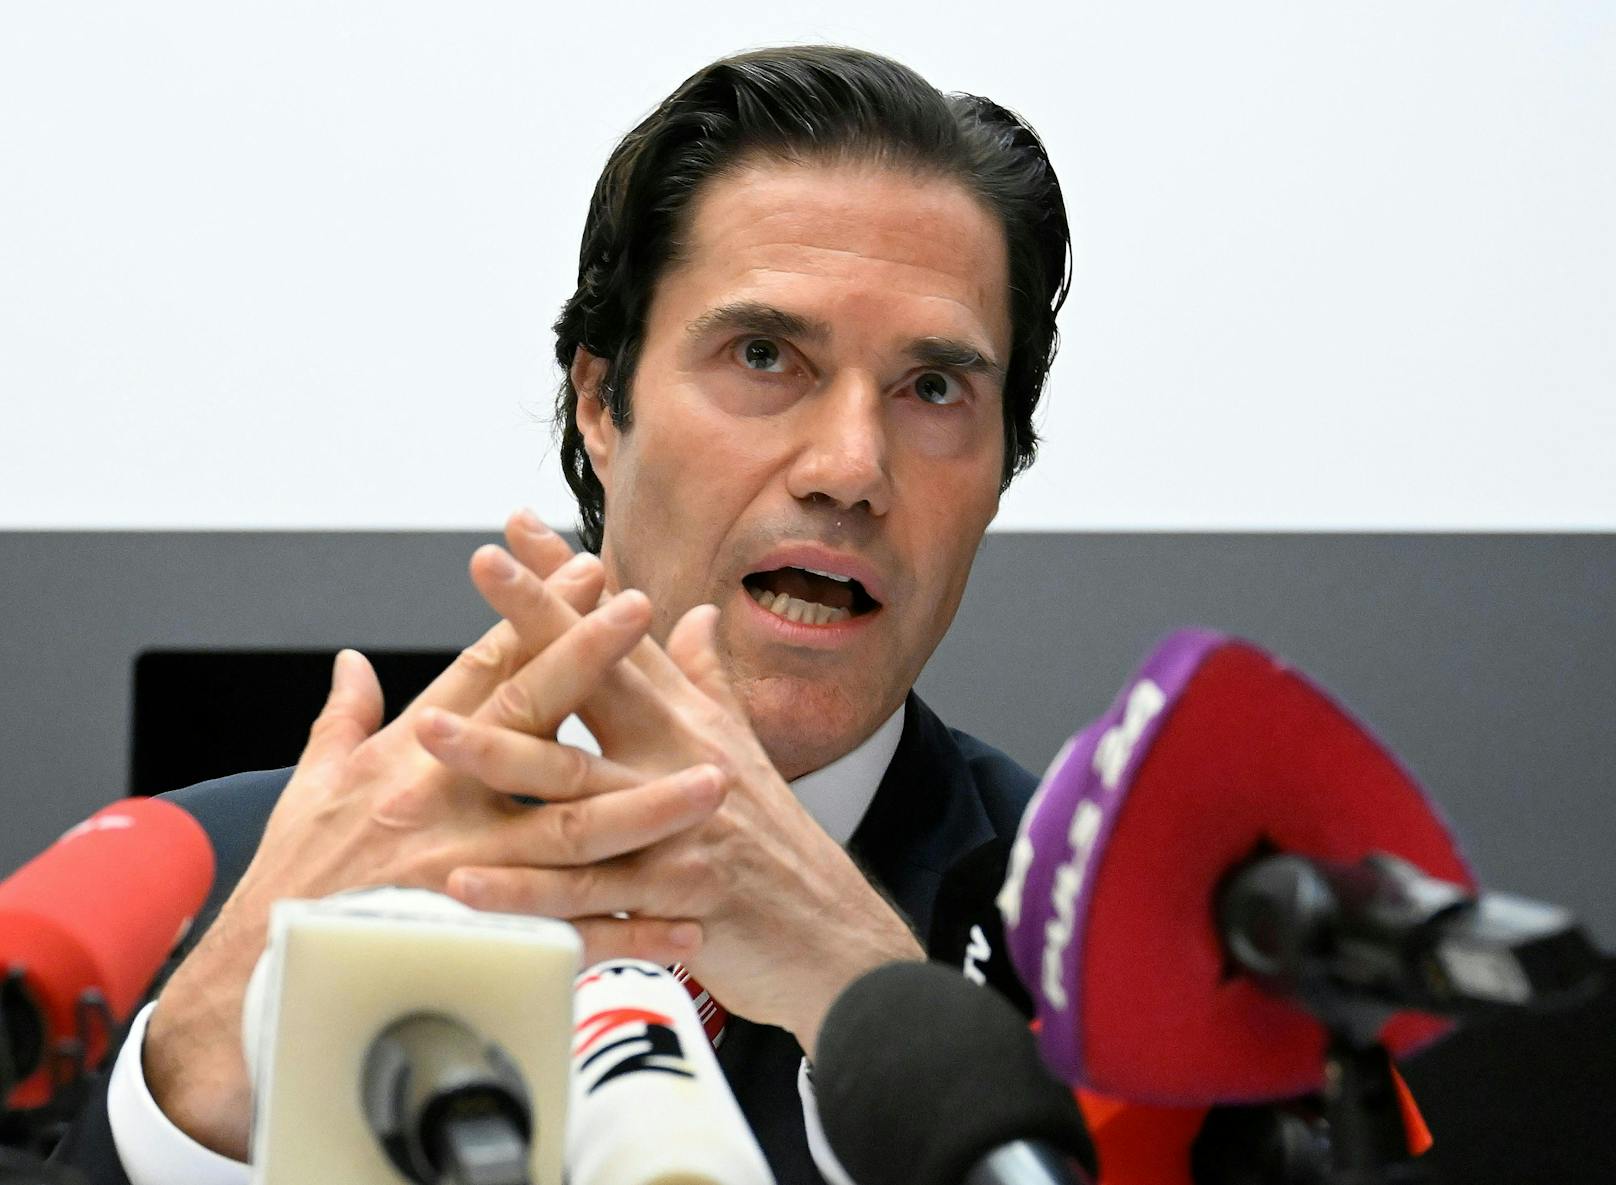 Rechtsanwalt Tassilo Wallentin am Montag, 22. August 2022, anlässlich der Pressekonferenz zu seiner Kandidatur als Bundespräsident in Wien.